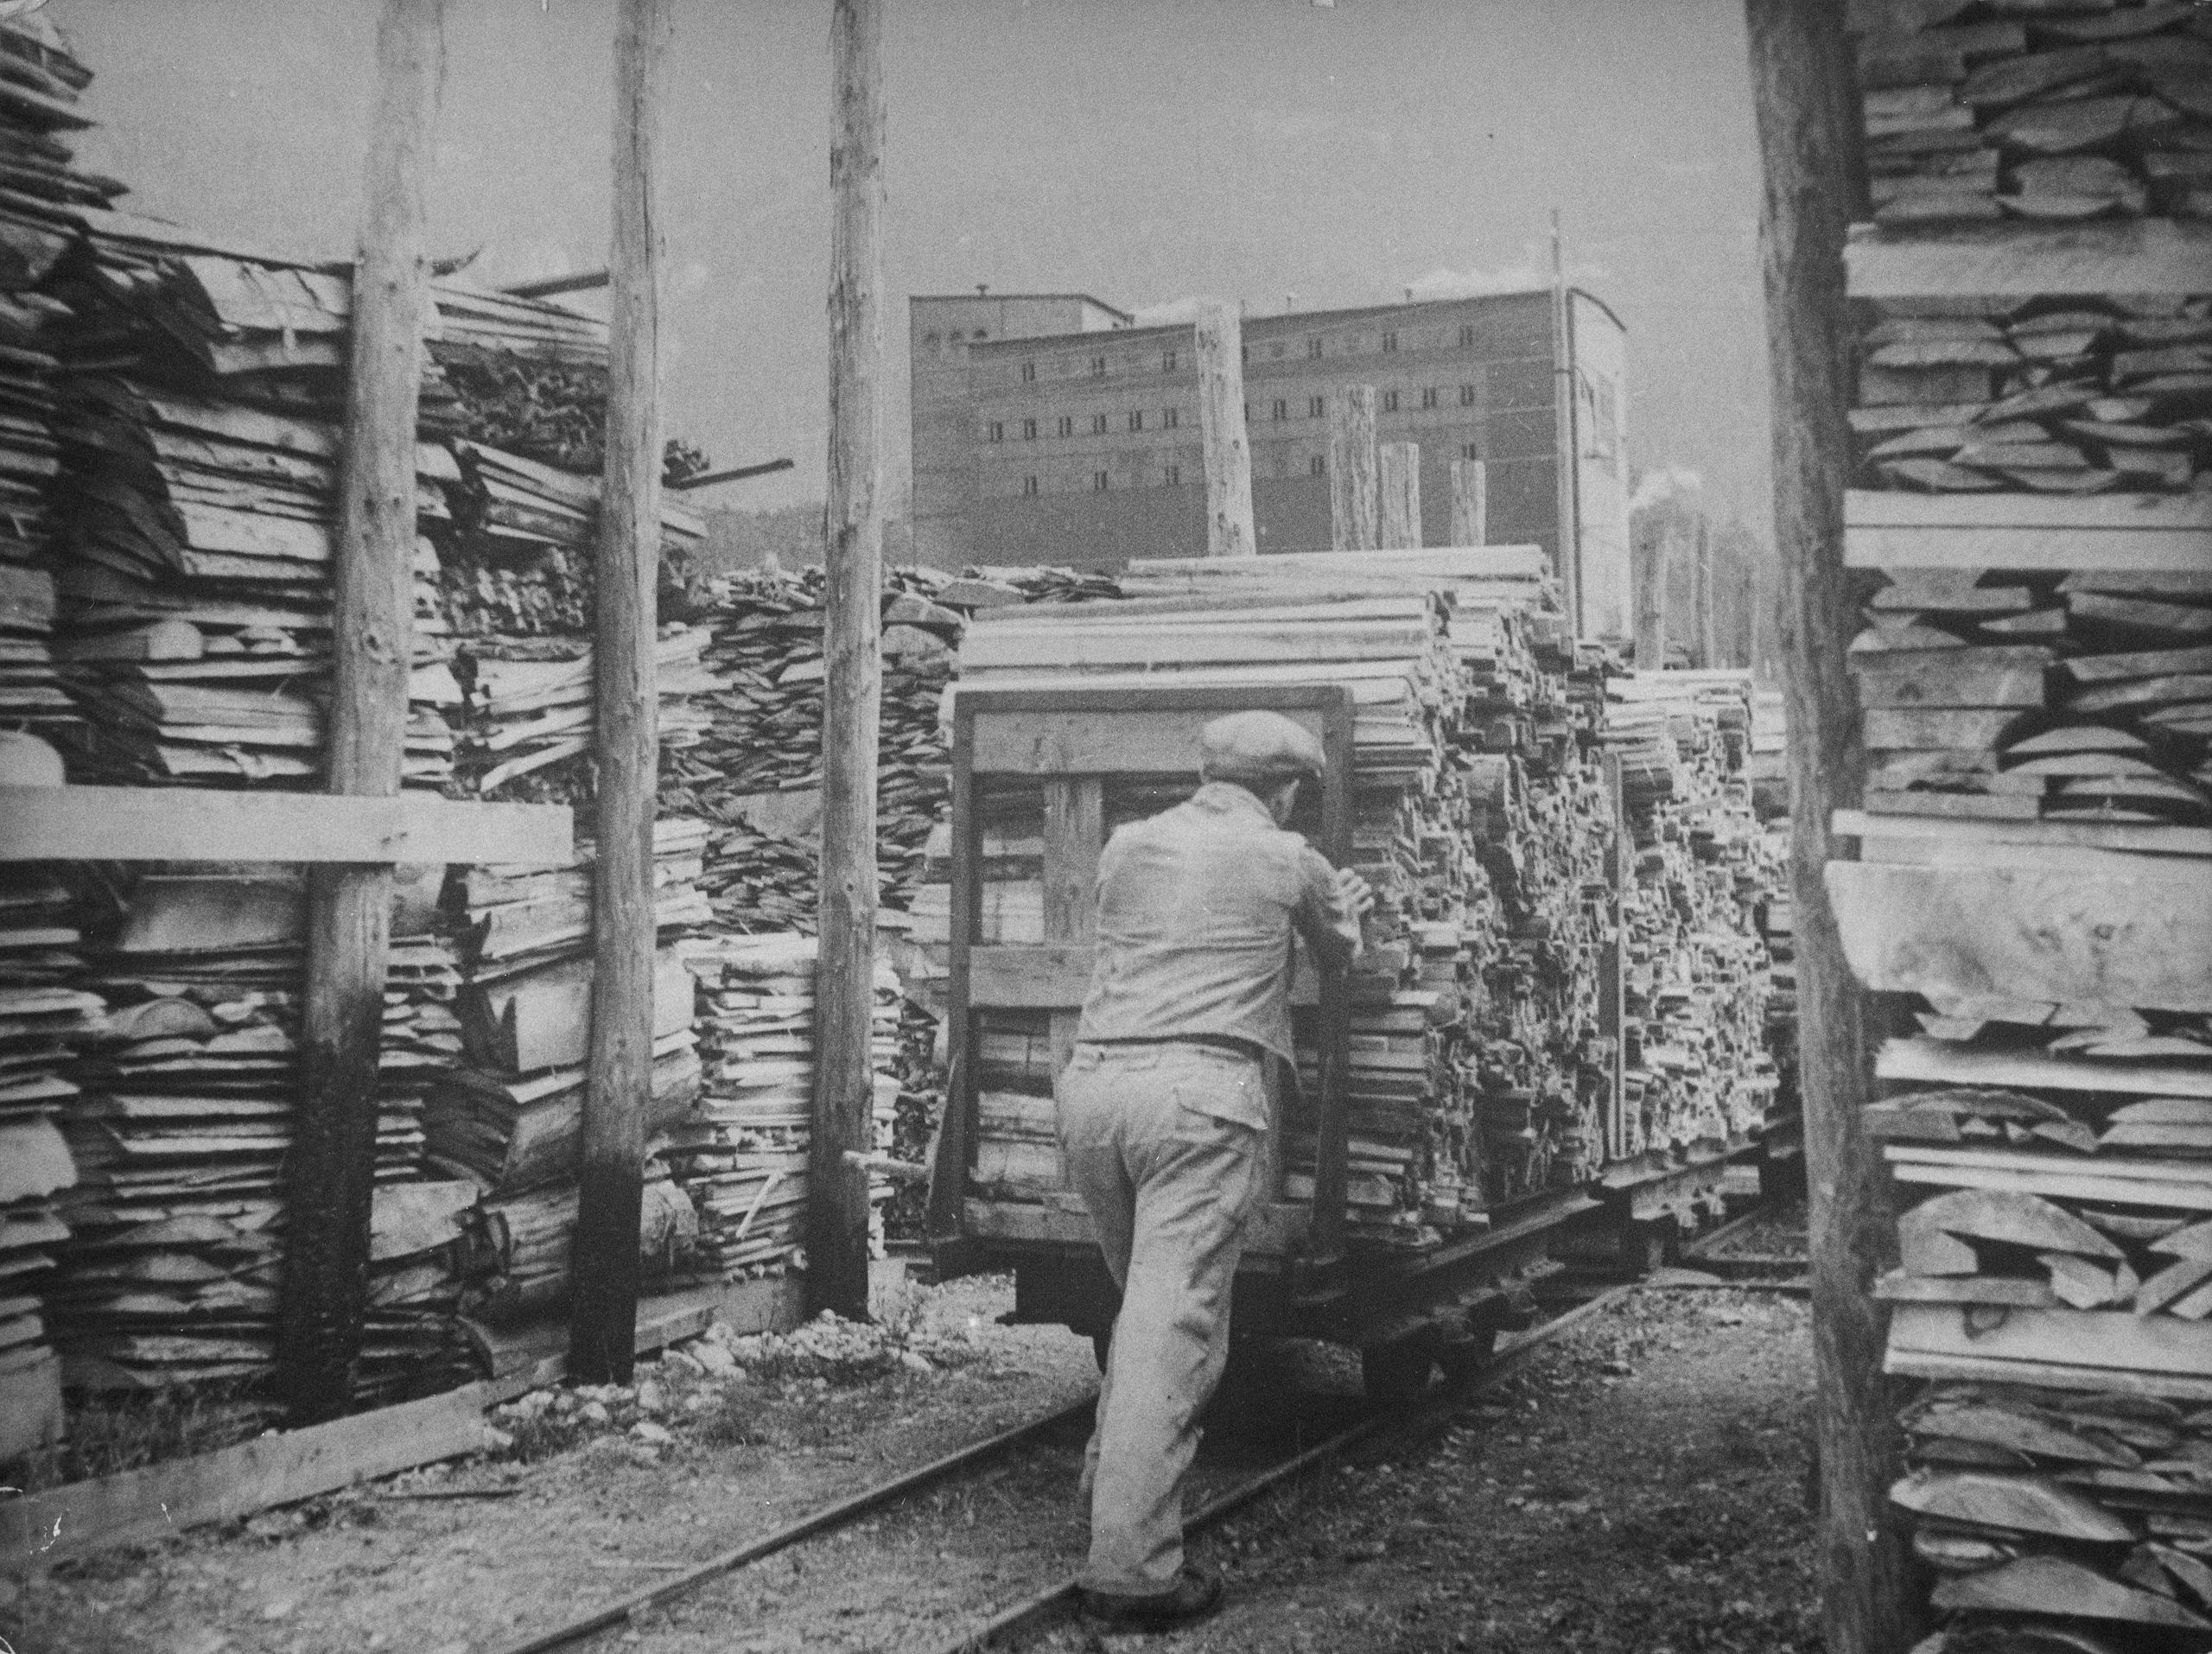 Transport de bois dans une usine dans les années 1940